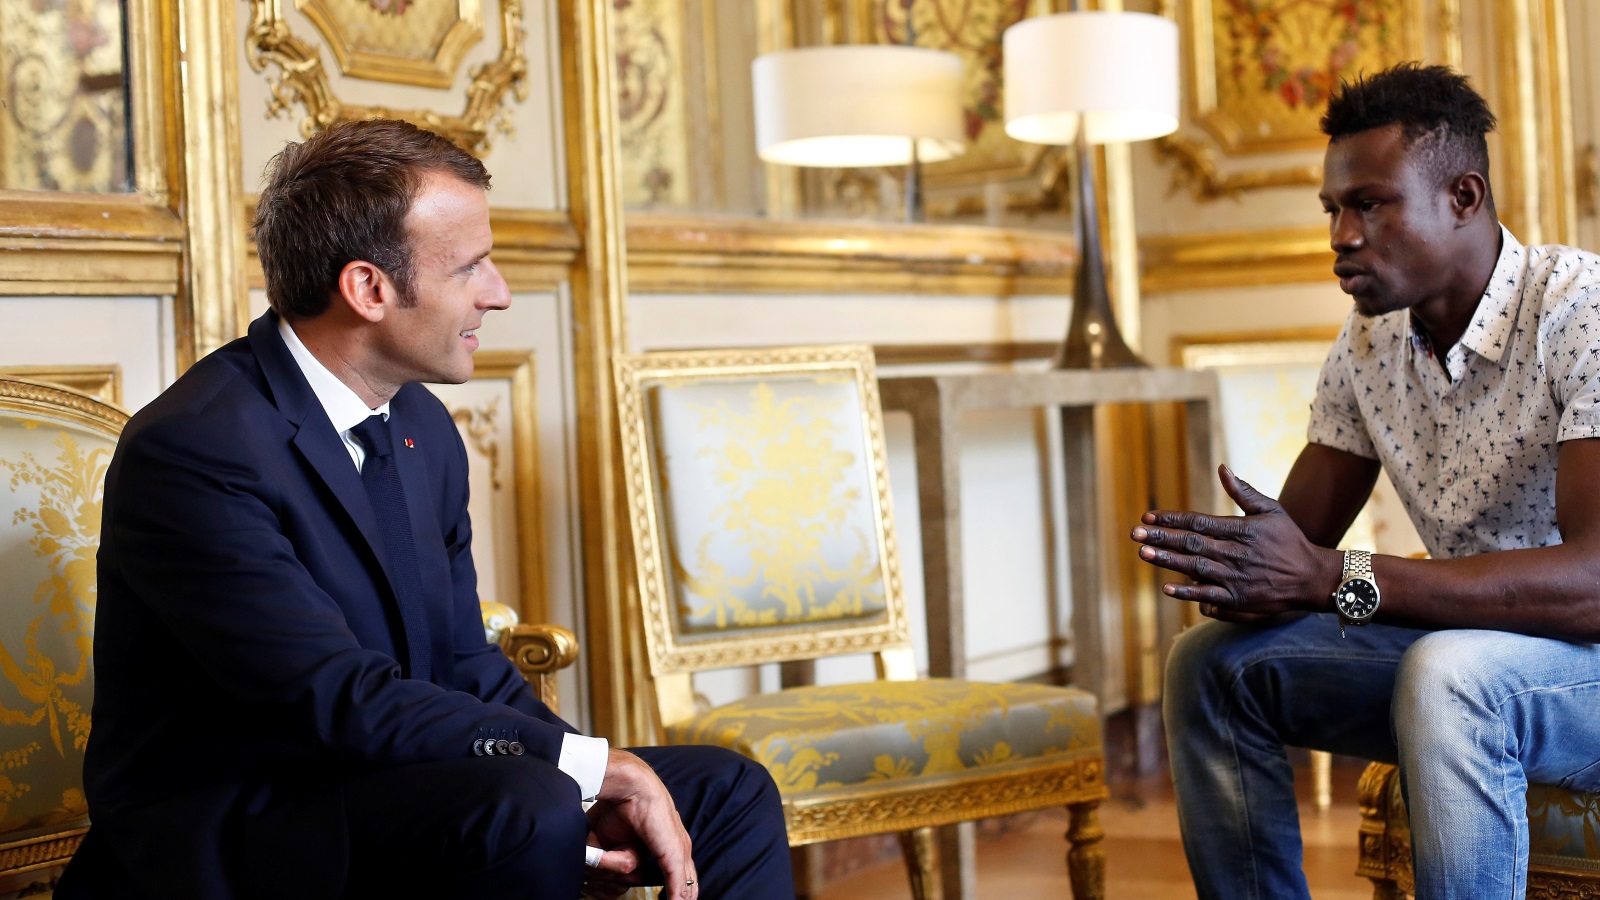 ‪الرئيس الفرنسي استقبل المهاجر الفرنسي الذي أنقذ الطفل (رويترز)‬ الرئيس الفرنسي استقبل المهاجر الفرنسي الذي أنقذ الطفل (رويترز)